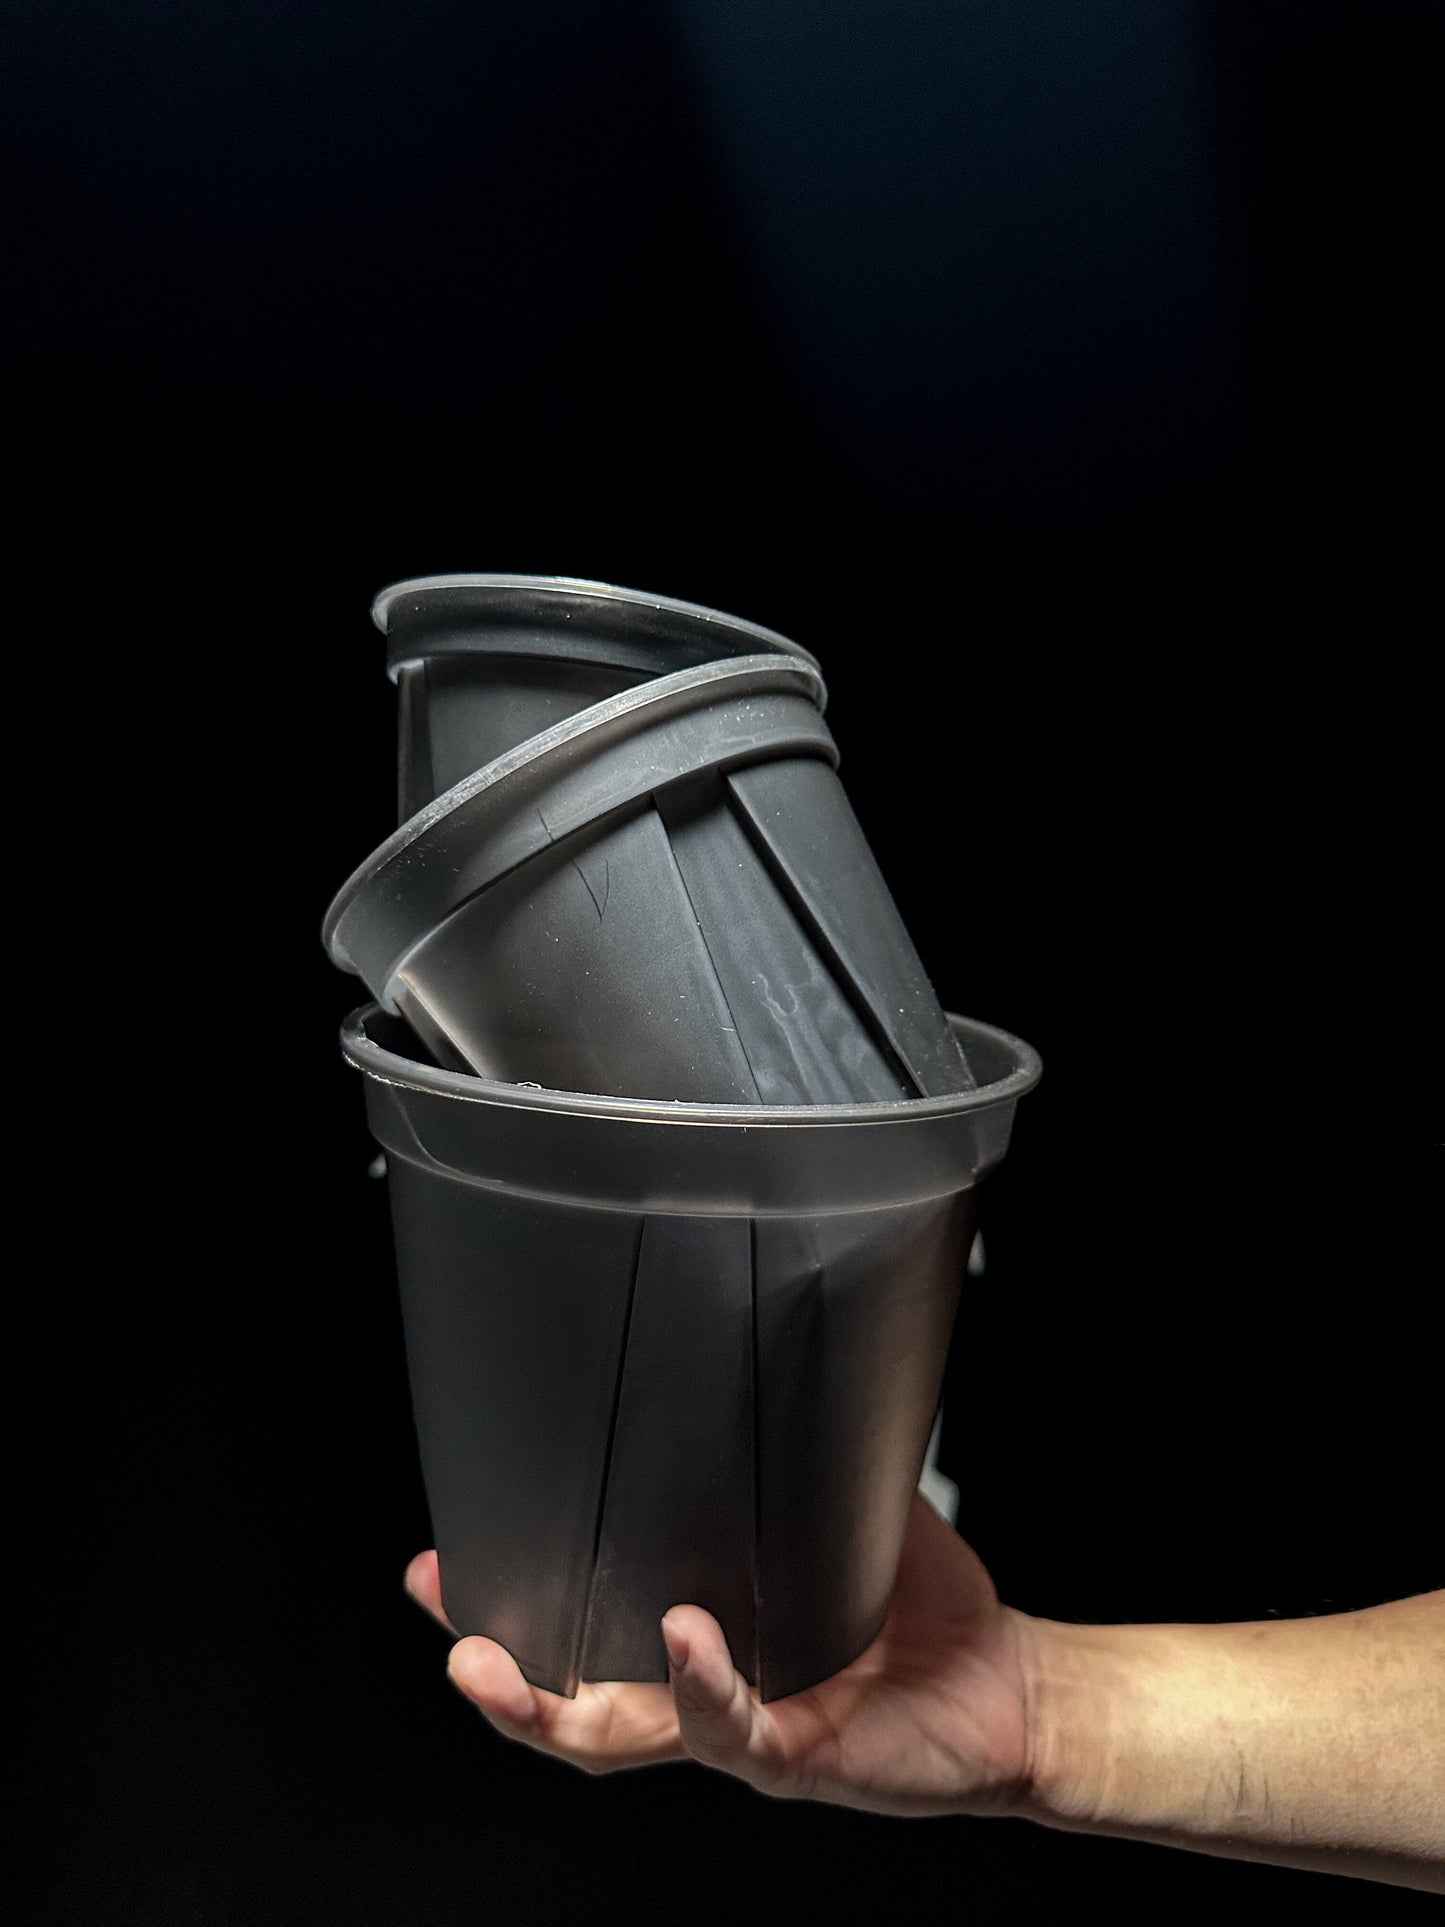 Black Clear Plastic Pot ( 4.7 / 5.9 / 7.0 inch ) The Basements LLC